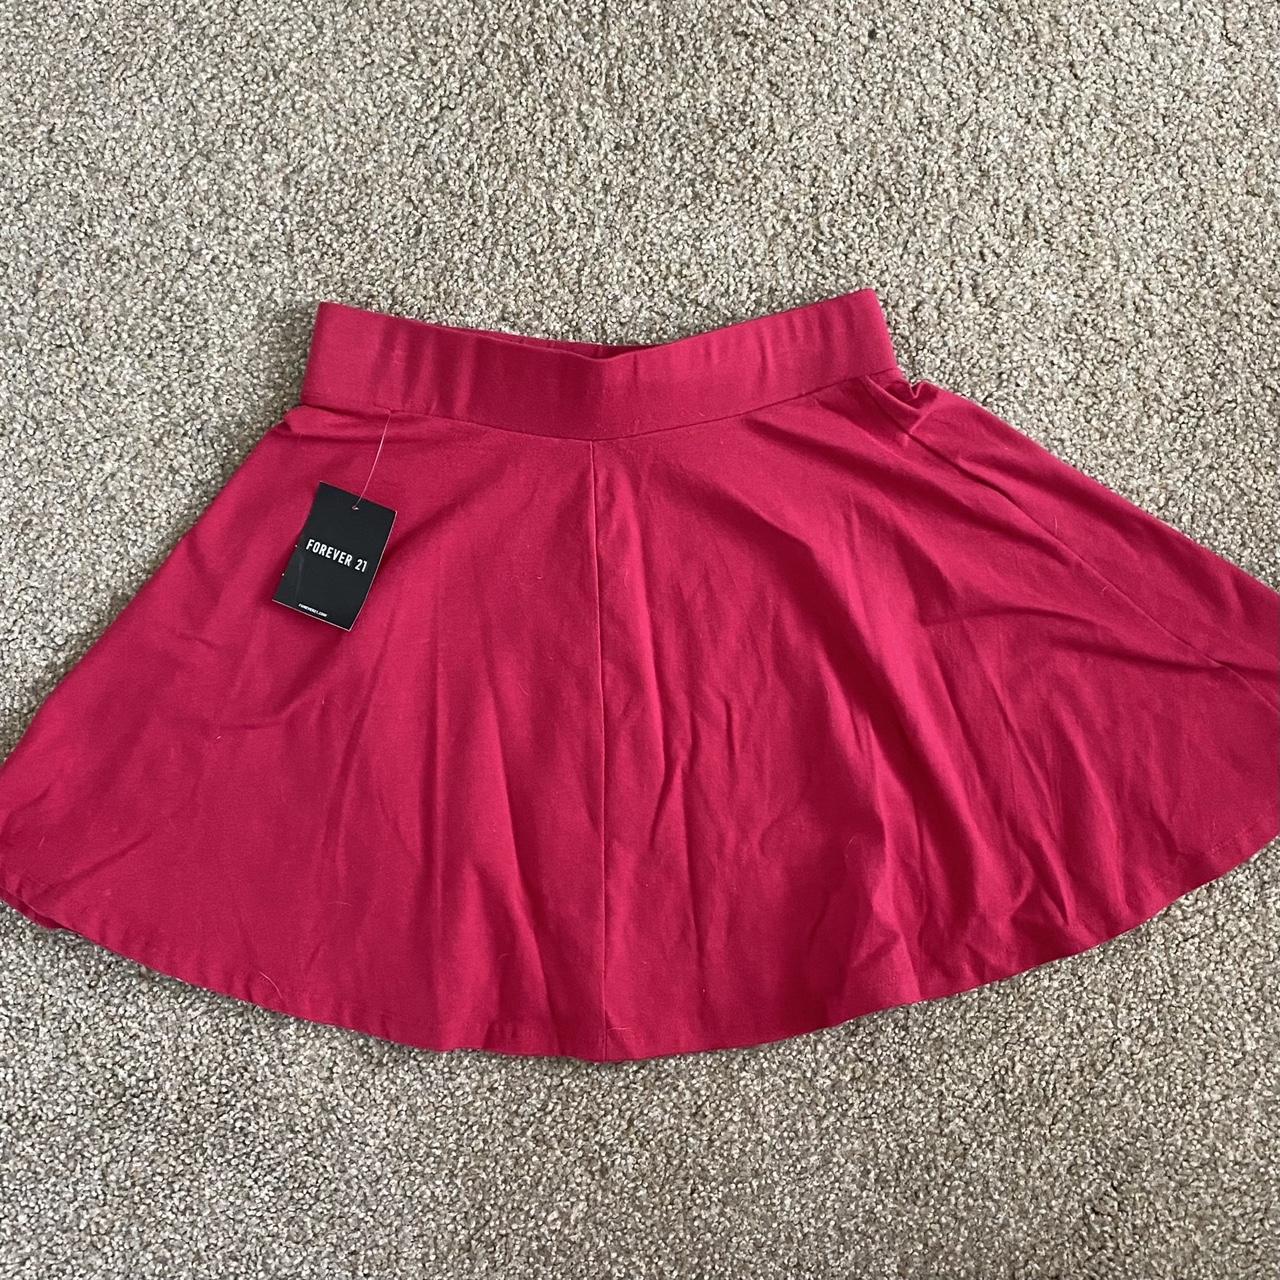 Forever 21 Women's Red Skirt | Depop